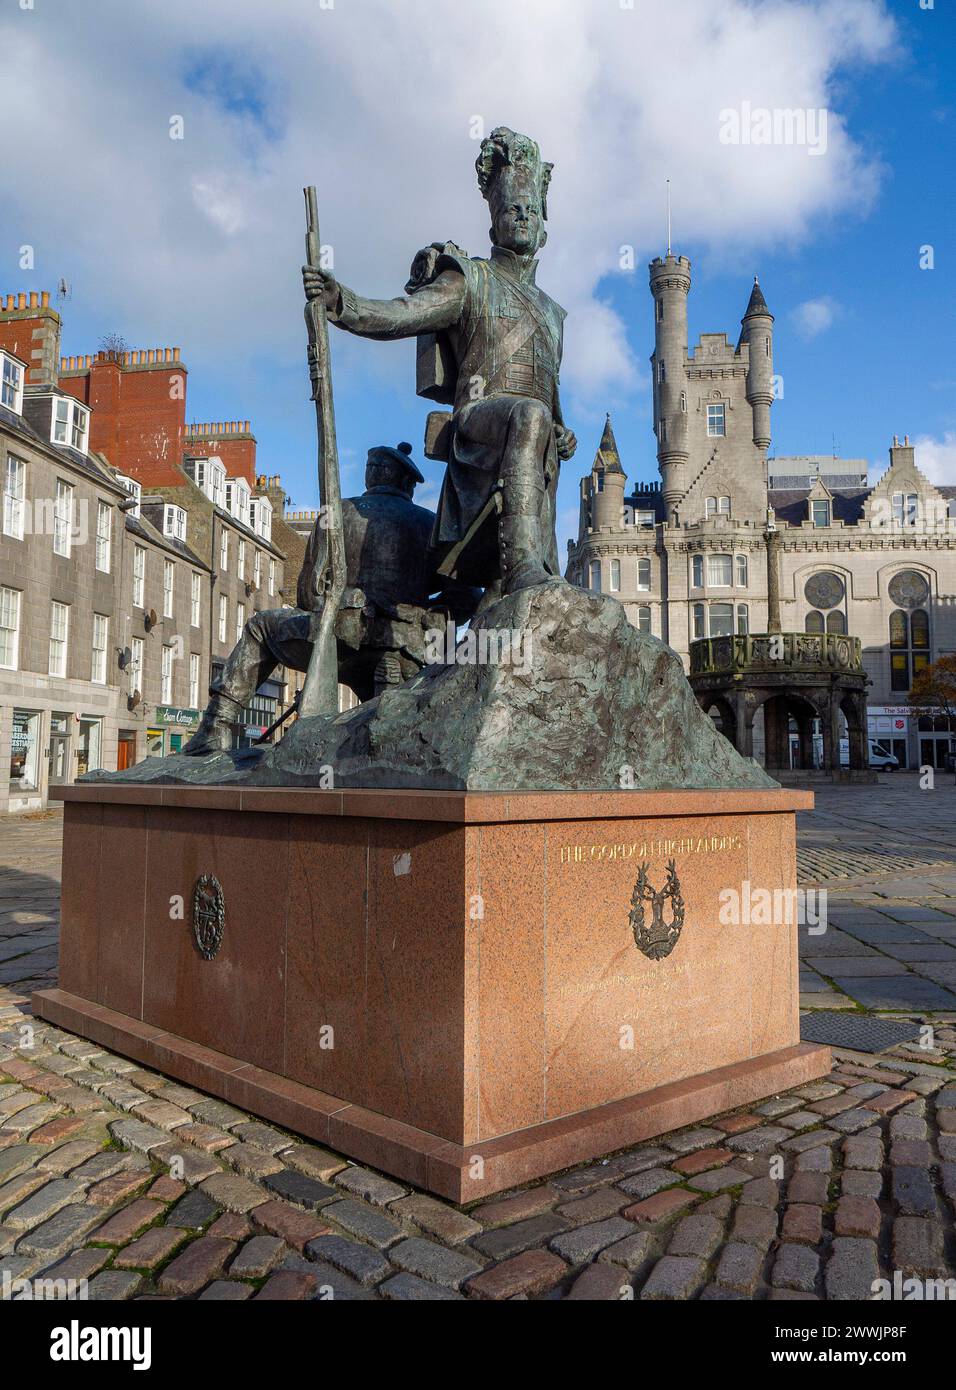 Il monumento Gordon Highlanders di Mark Richards, di fronte alla Cittadella di Aberdeen e Mercat Cross, Castle Street, Castlegate, Aberdeen, Scozia, REGNO UNITO Foto Stock